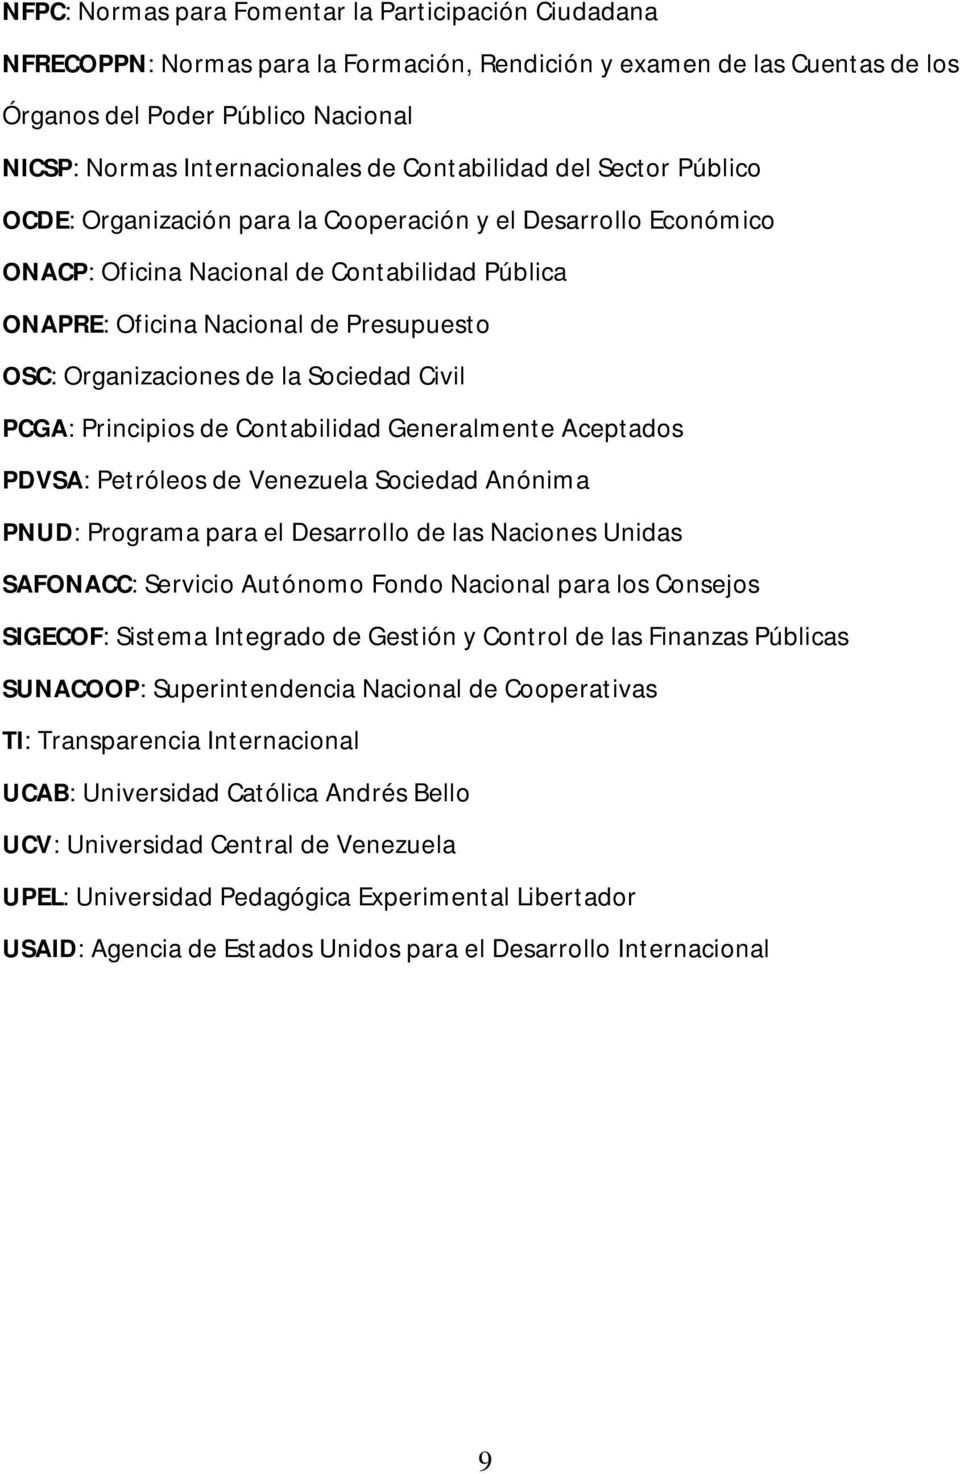 Organizaciones de la Sociedad Civil PCGA: Principios de Contabilidad Generalmente Aceptados PDVSA: Petróleos de Venezuela Sociedad Anónima PNUD: Programa para el Desarrollo de las Naciones Unidas